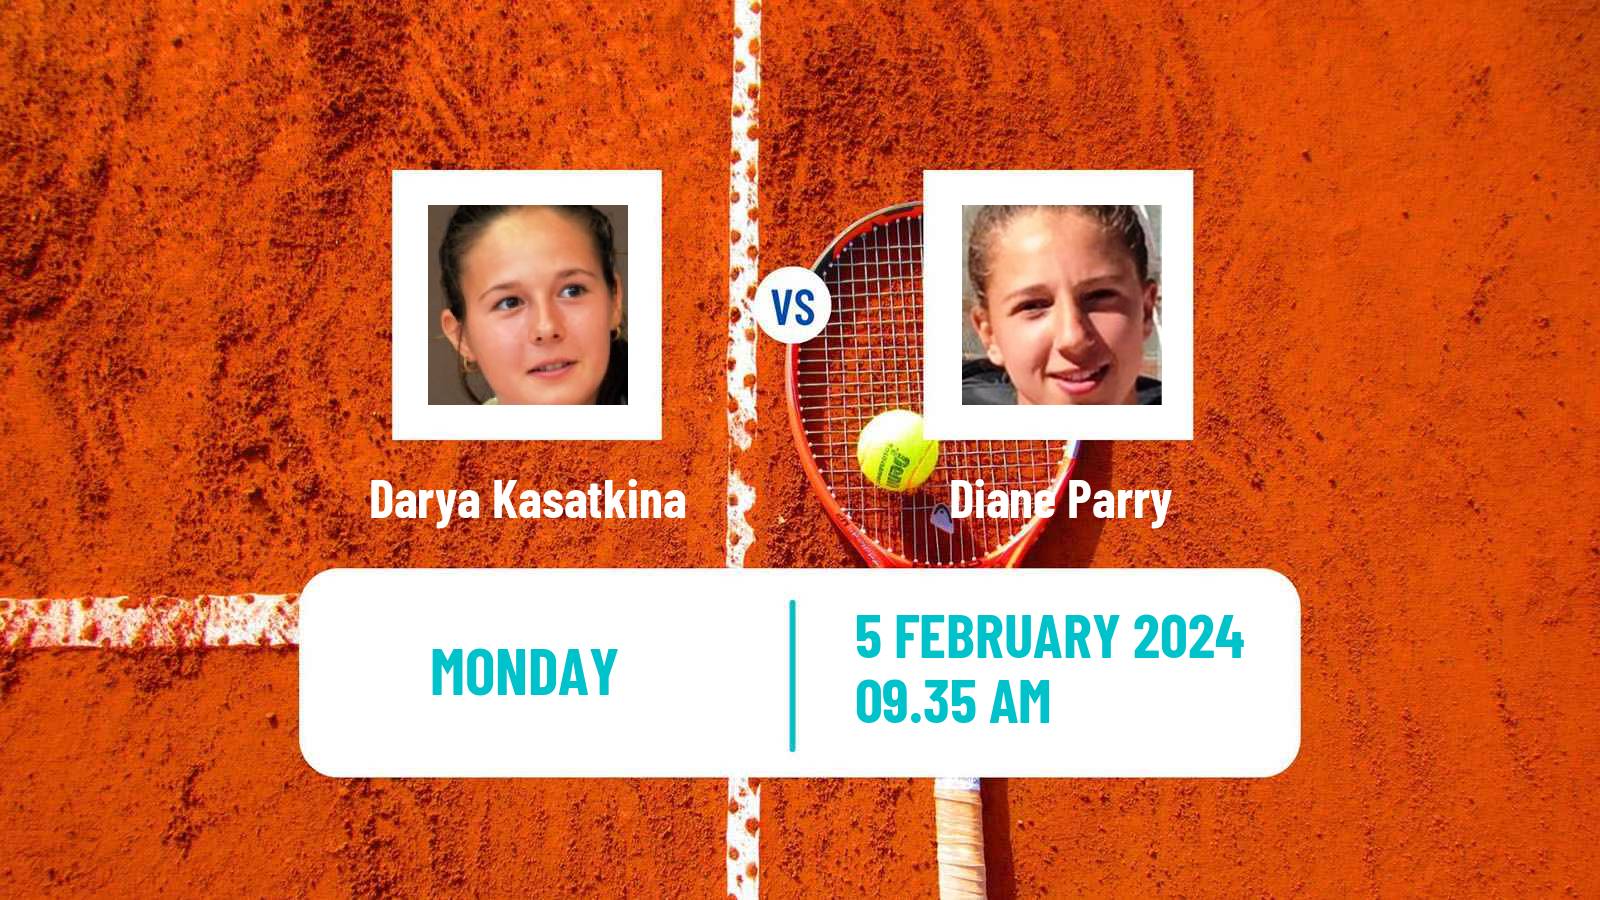 Tennis WTA Abu Dhabi Darya Kasatkina - Diane Parry